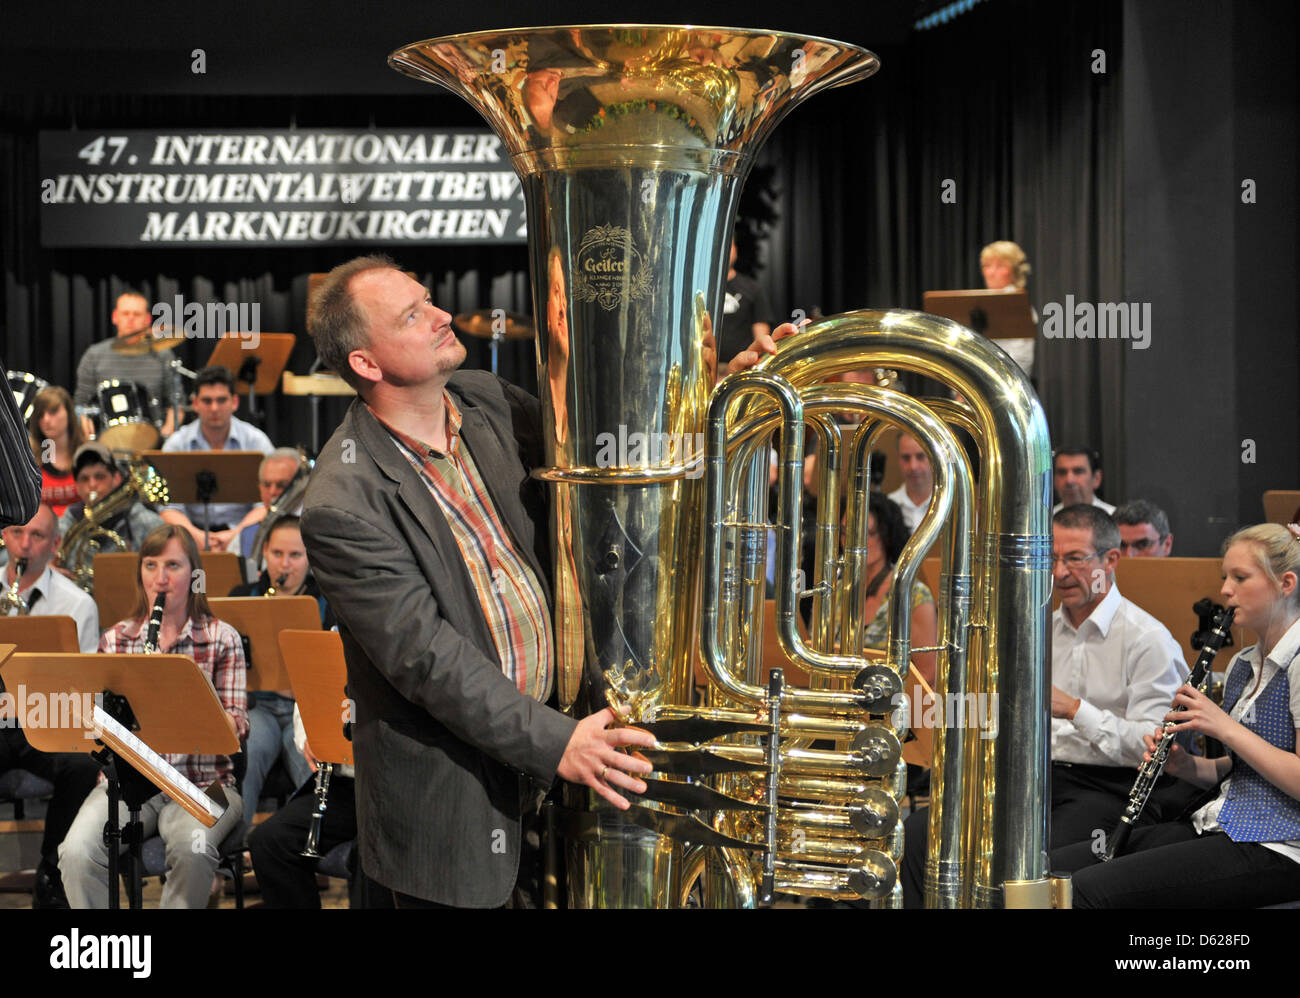 Joerg Wachsmuth desde Dresde desempeña "Vuelo del abejorro' en la tuba  jugable más grande del mundo con la orquesta sinfónica de inMarkneukirchen  Markneukirchen, Alemania, 15 de mayo de 2012. La tuba es